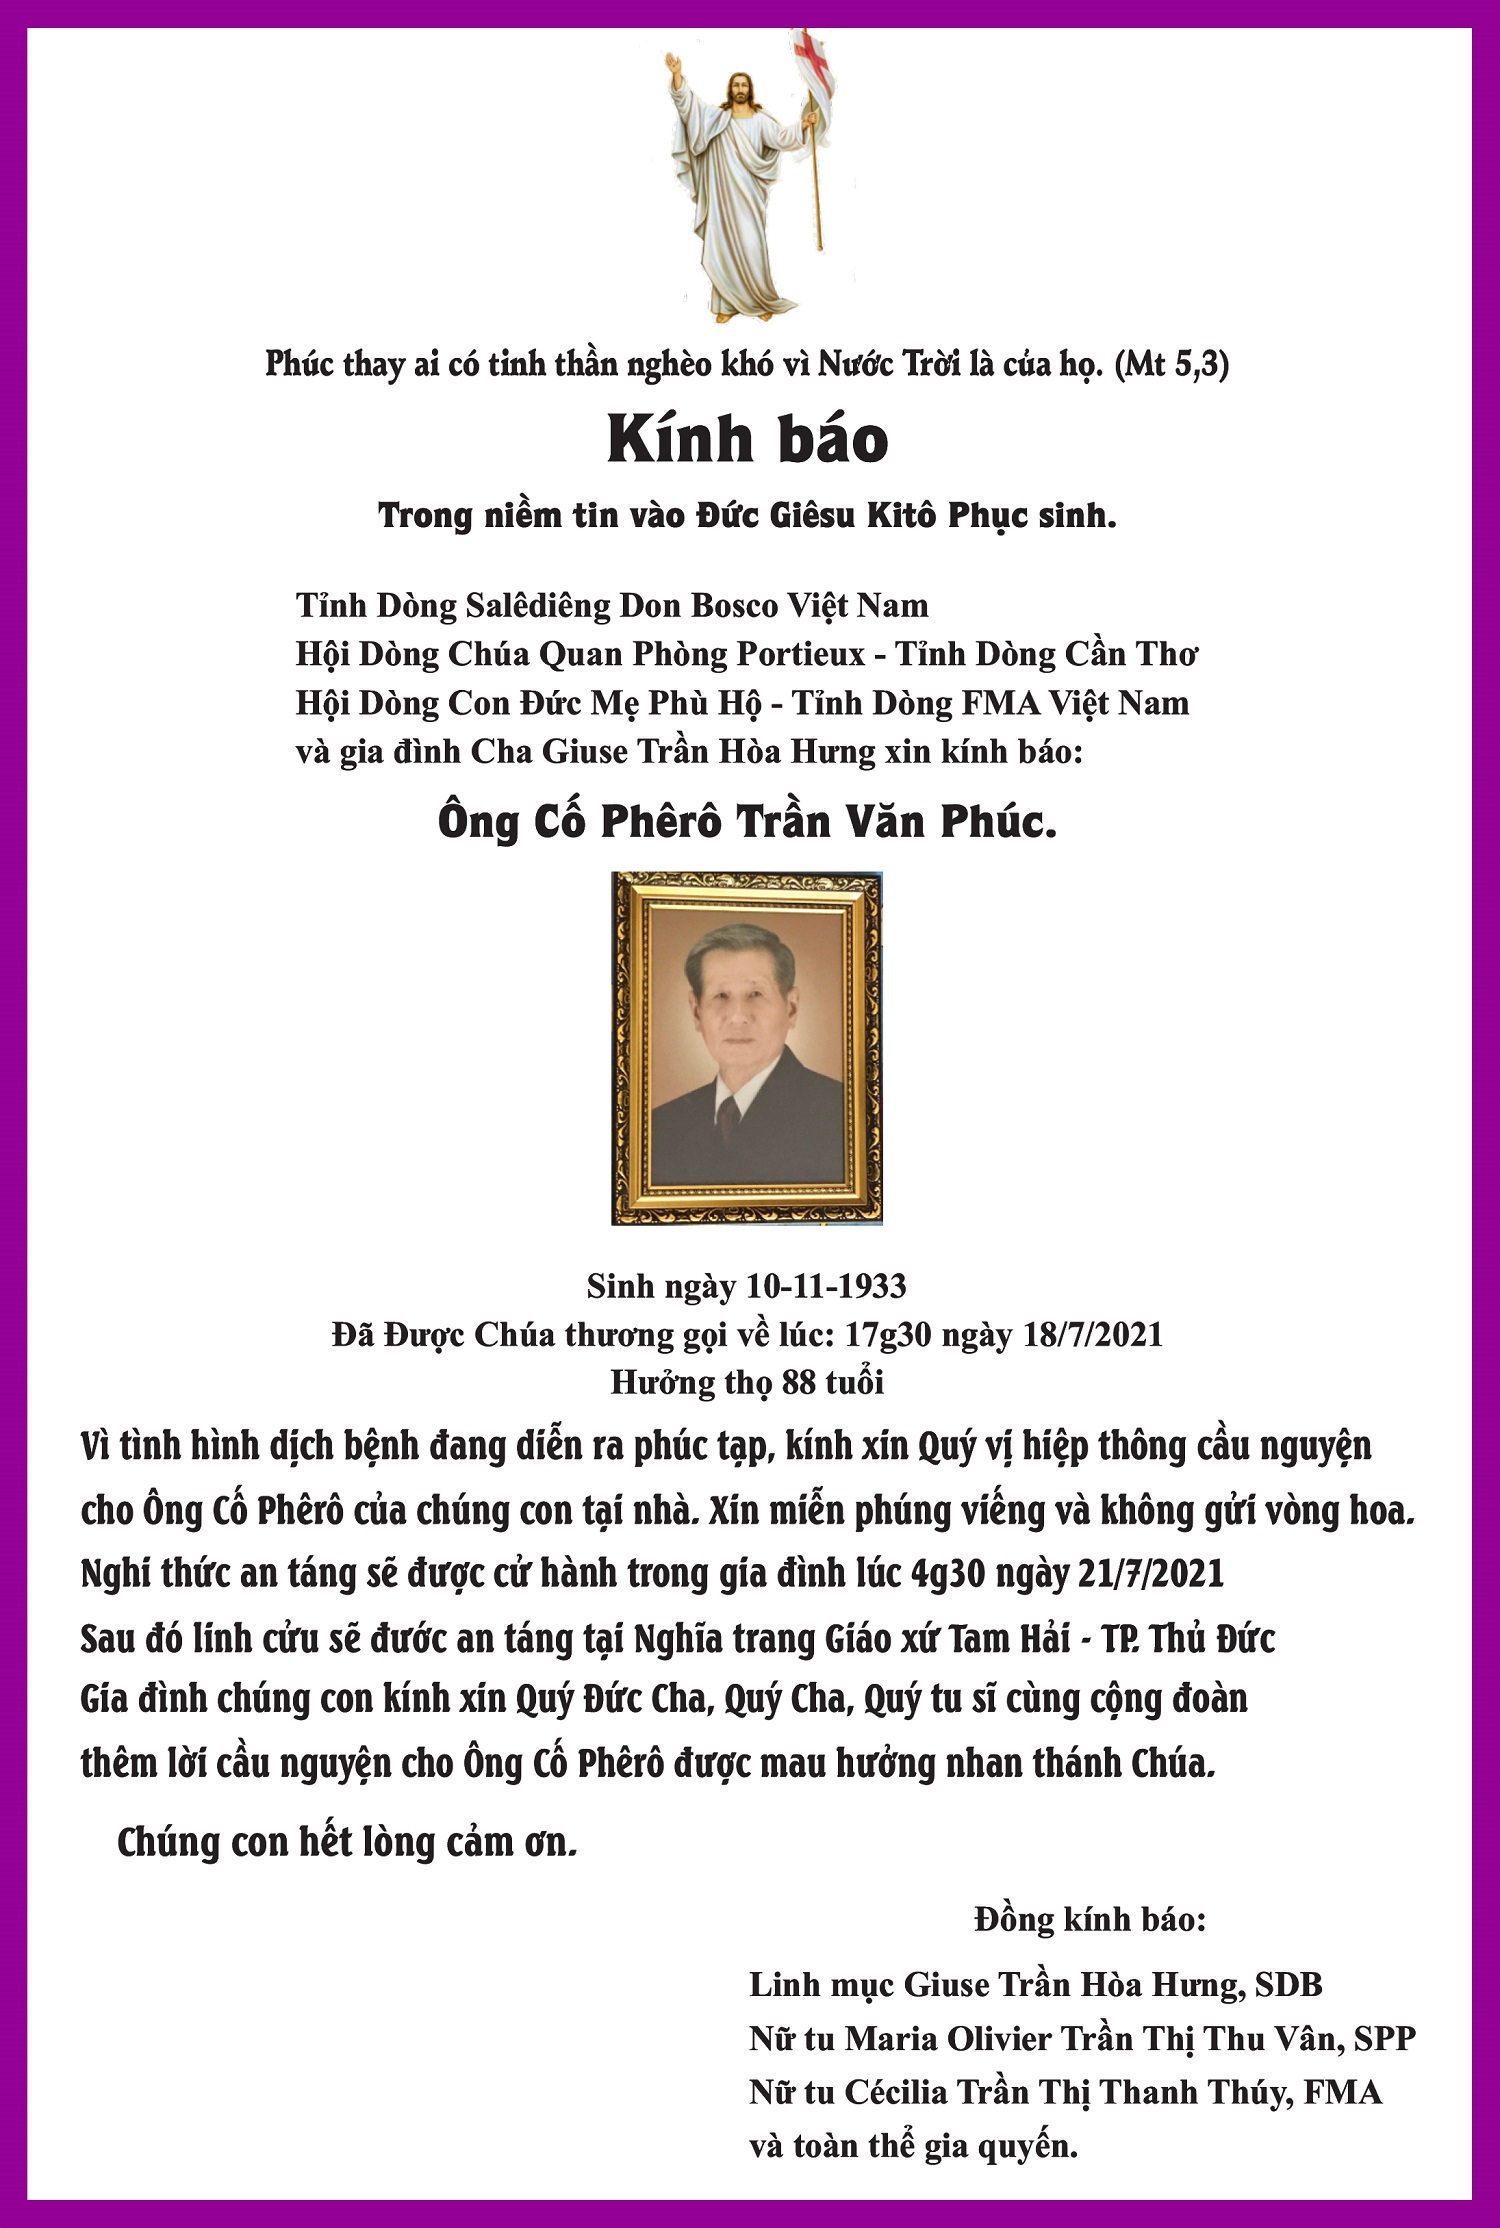 Cáo phó: Thân phụ linh mục Giuse Trần Hòa Hưng - Đại diện Giám mục đặc trách tu sĩ - qua đời 18-7-2021